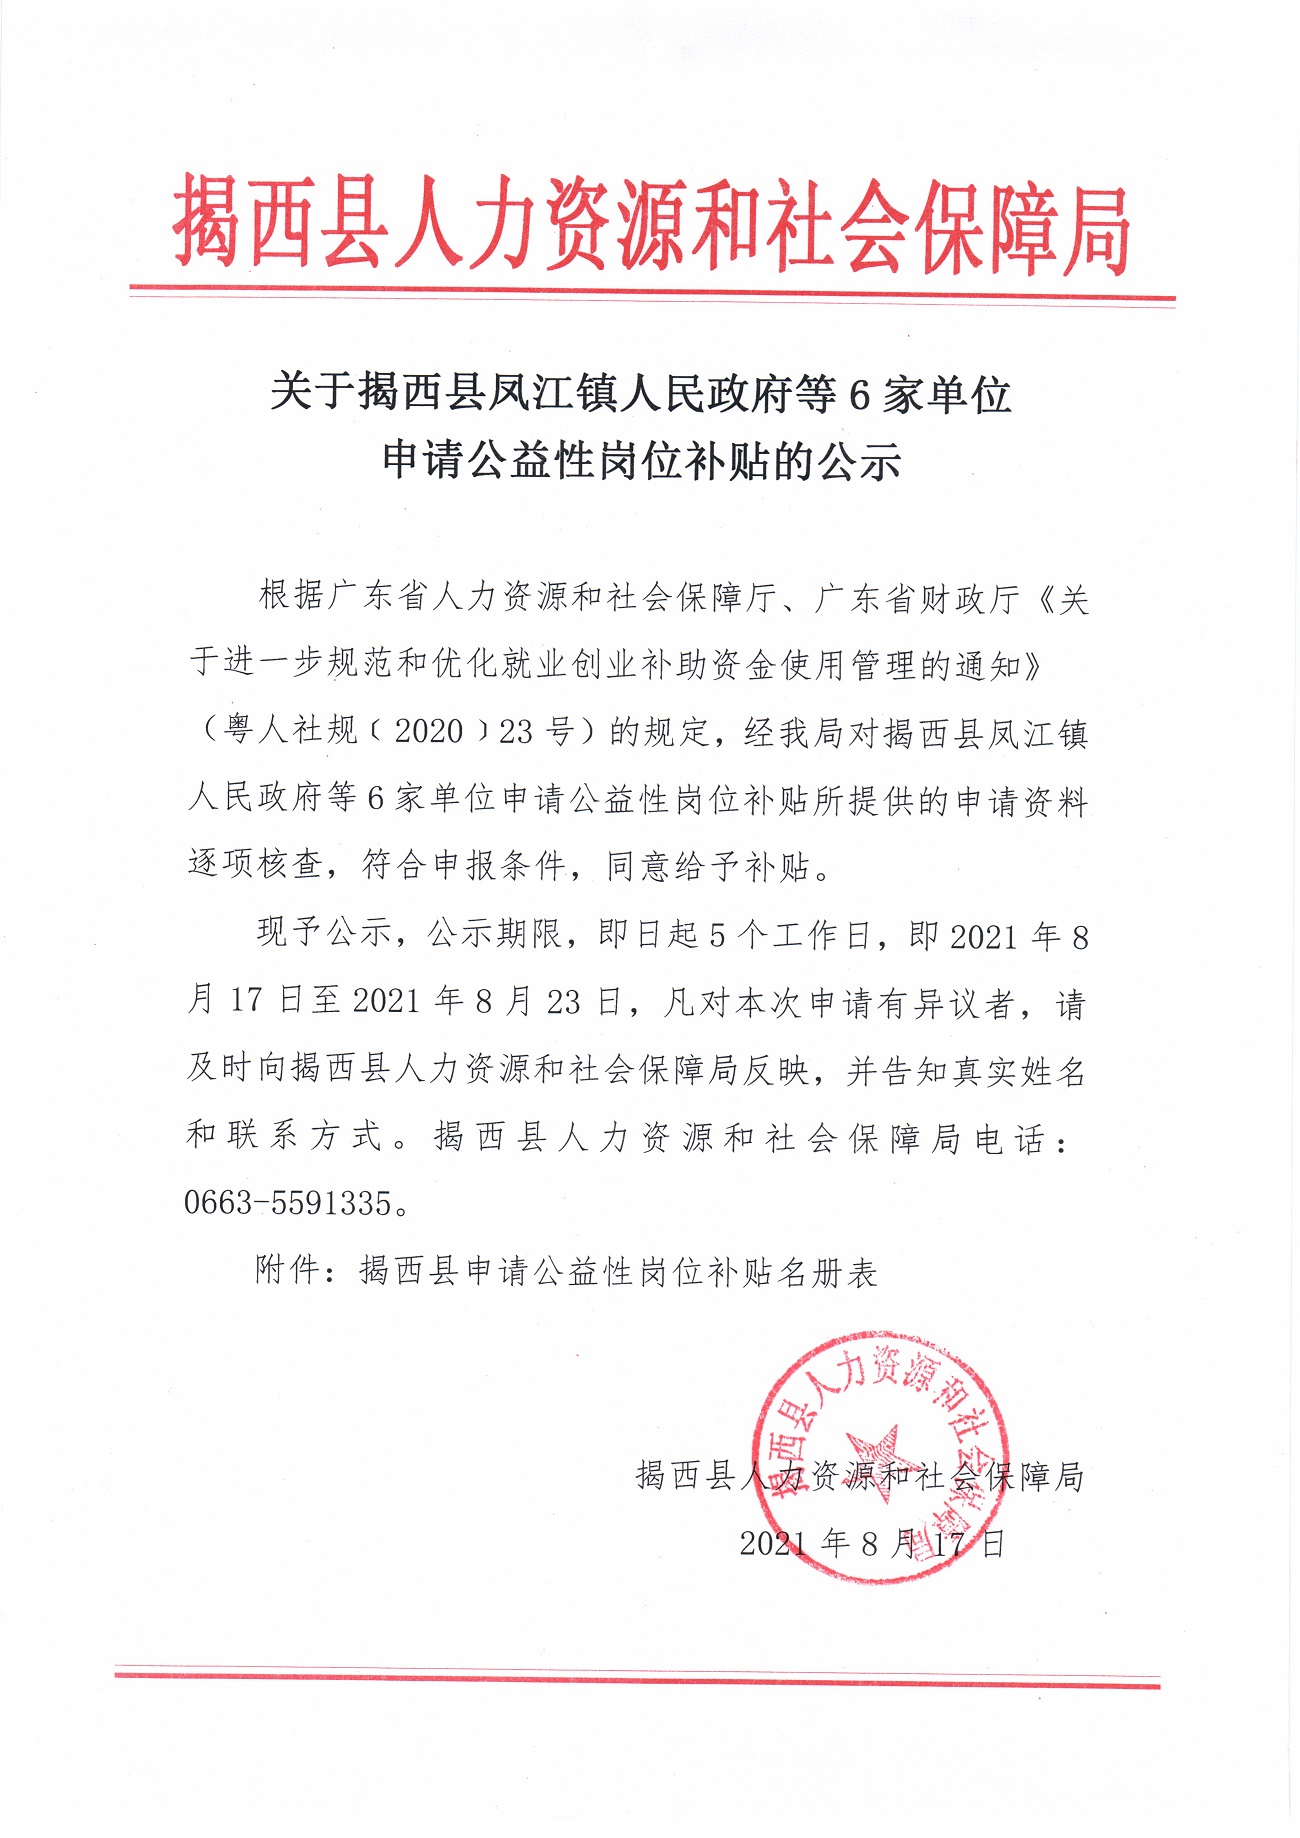 关于揭西县凤江镇人民政府等6家单位申请公益性岗位补贴的公示.jpg